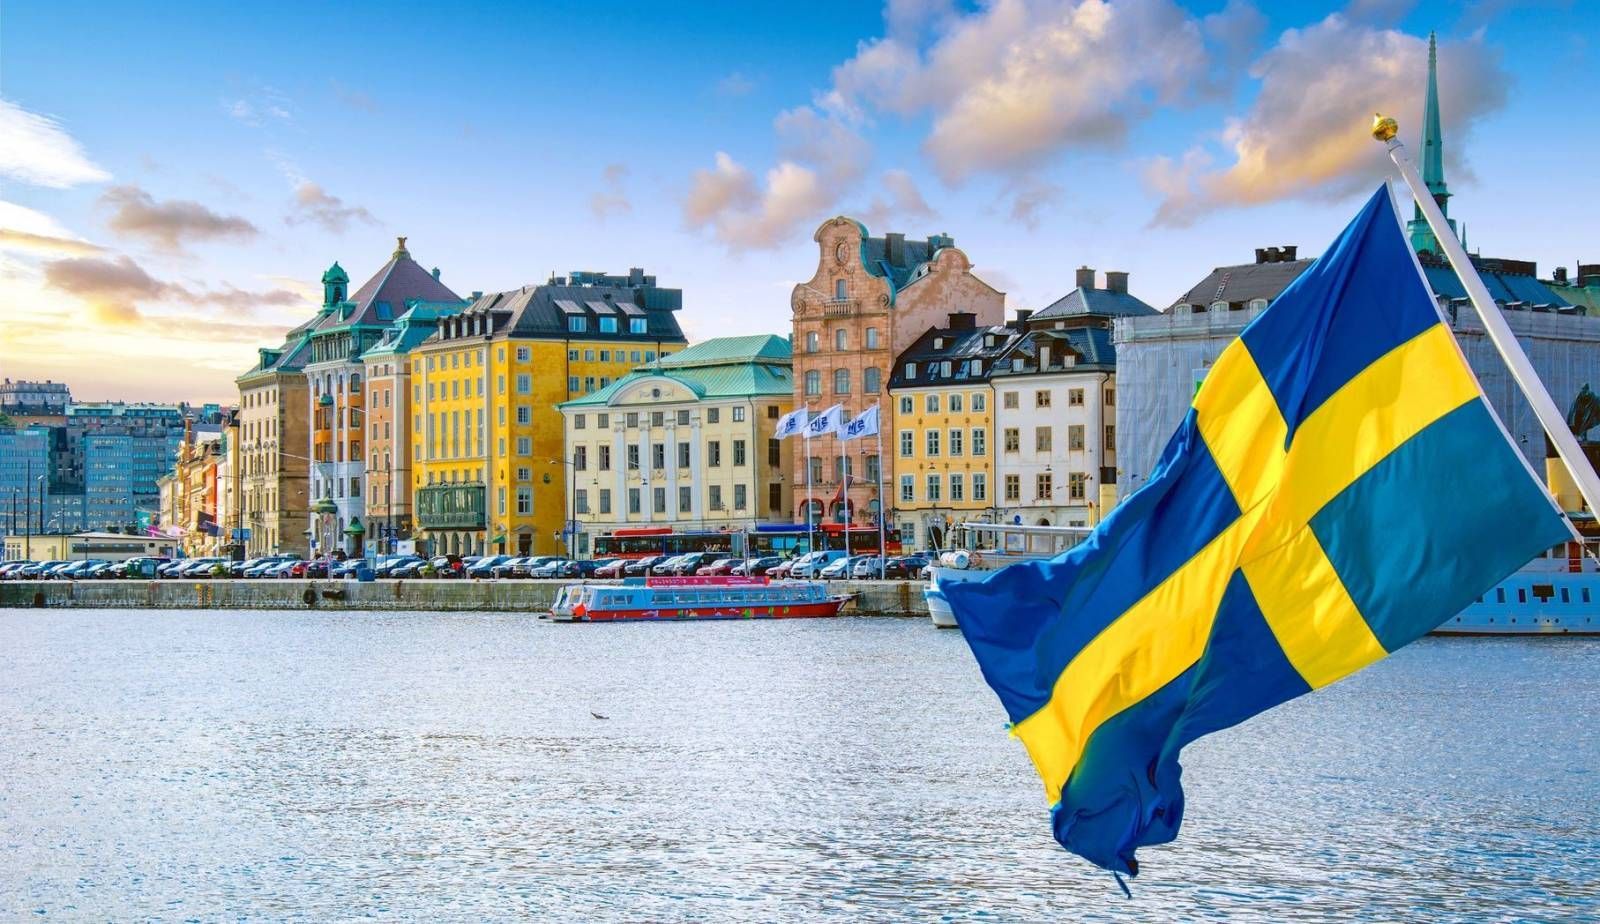 Suedia oferă 120 de mii de euro pentru a contracara dezinformarea legată de alegeri